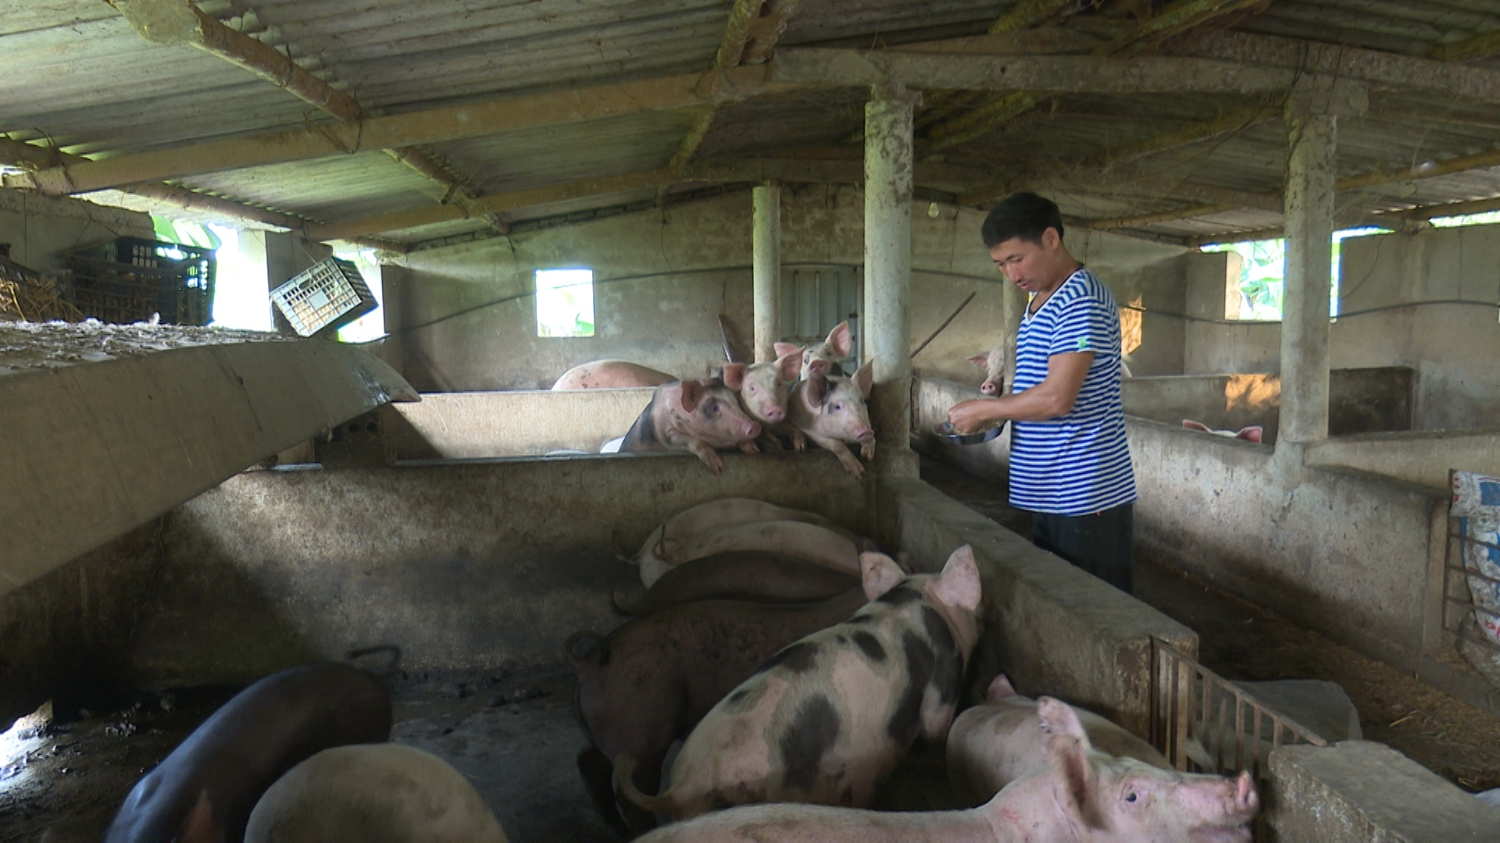 Trang trại chăn nuôi tổng hợp của anh Phạm Ngọc Long, thôn Tân Lộc, xã Quảng Tân đem lại hiệu quả kinh tế cao